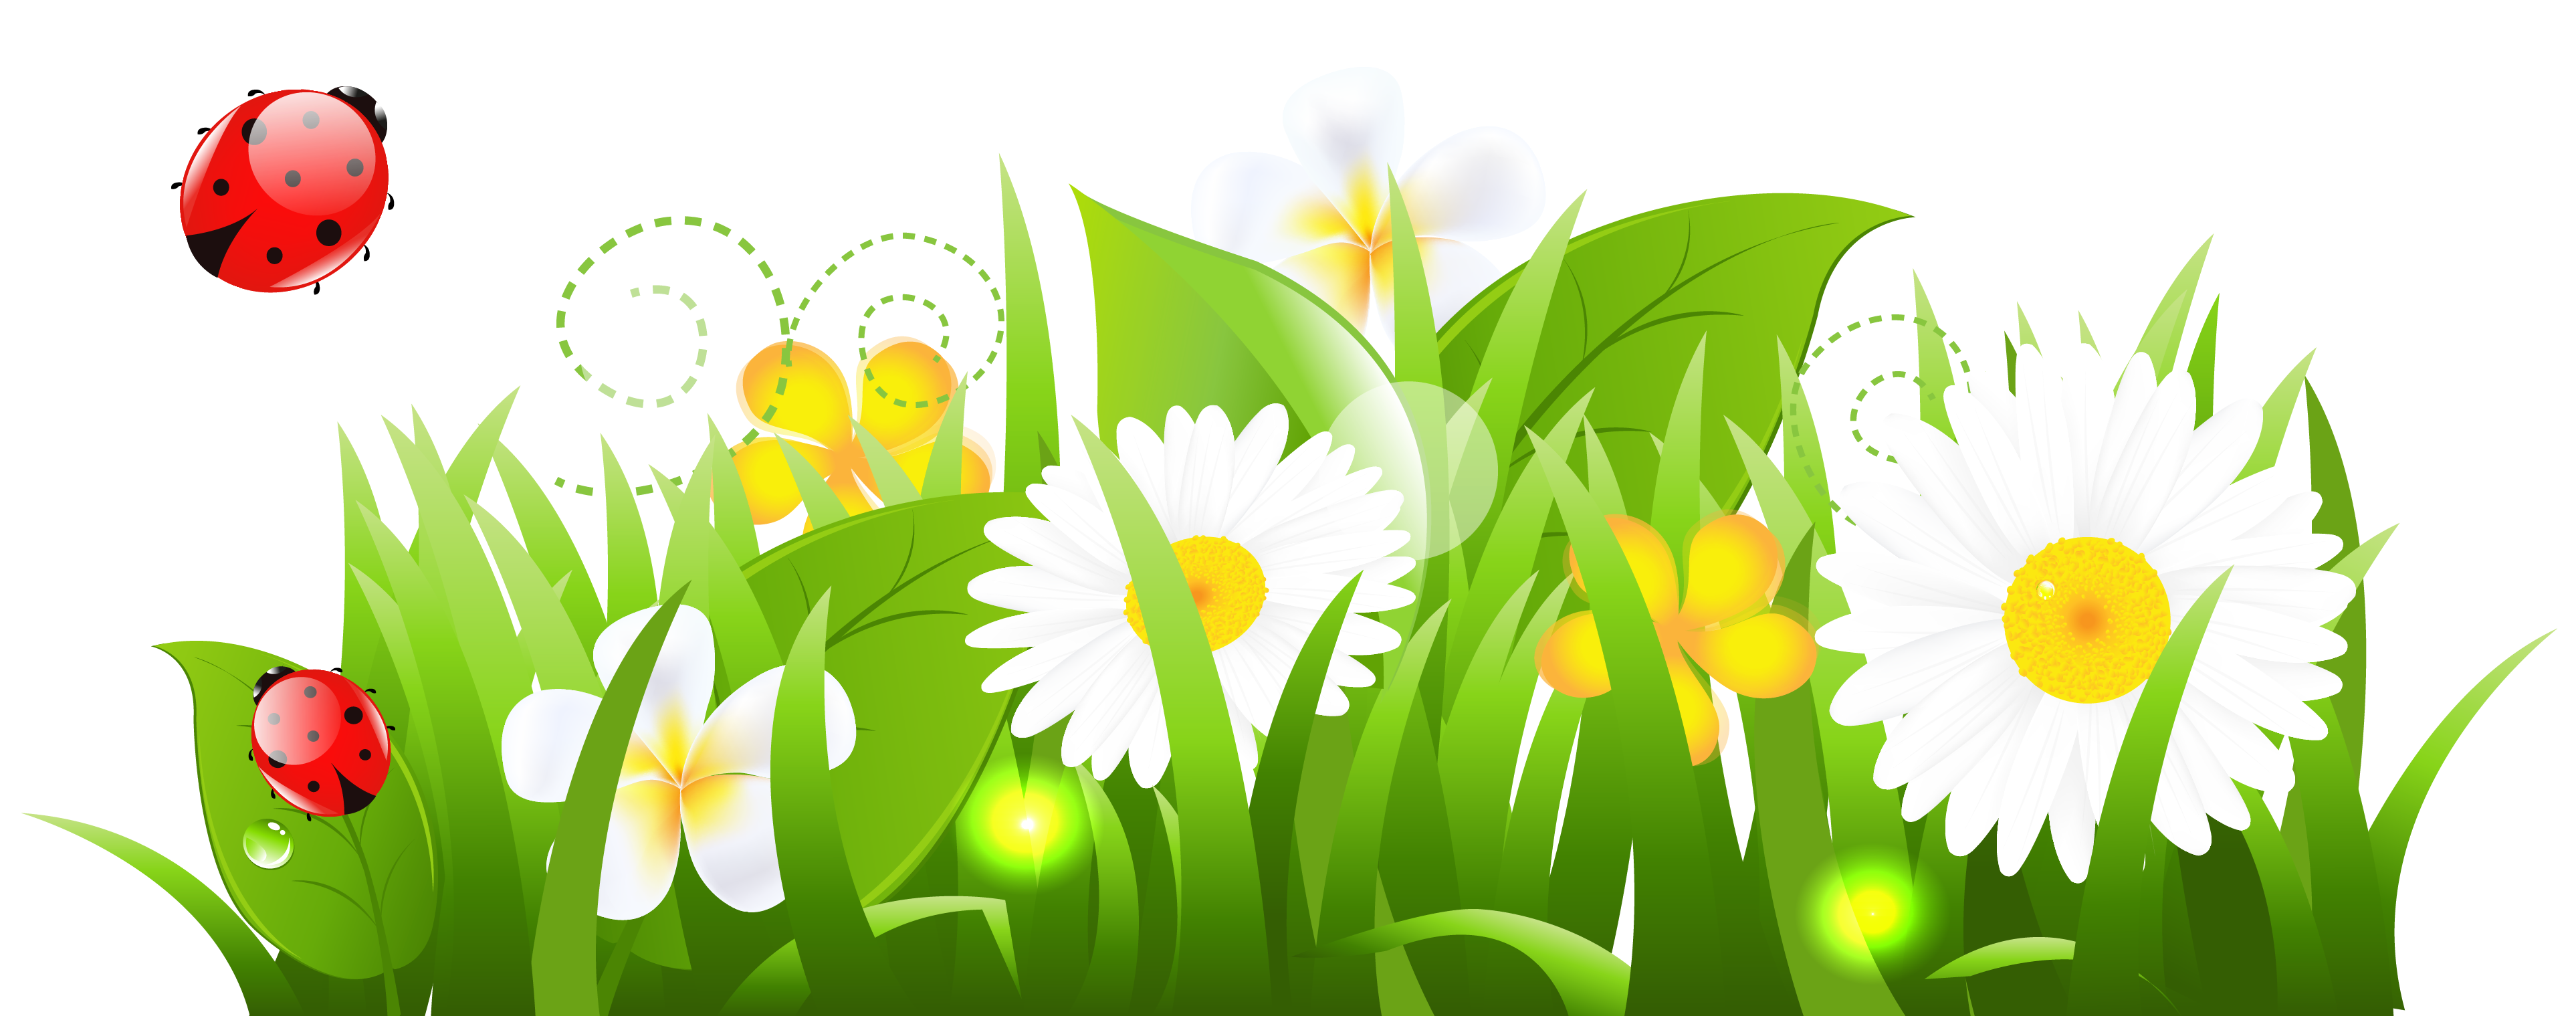 Цветы для оформления весны. Травка для детей в детском саду. Весенние цветы мультяшные. Цветы на салатовом фоне. Растения на прозрачном фоне.